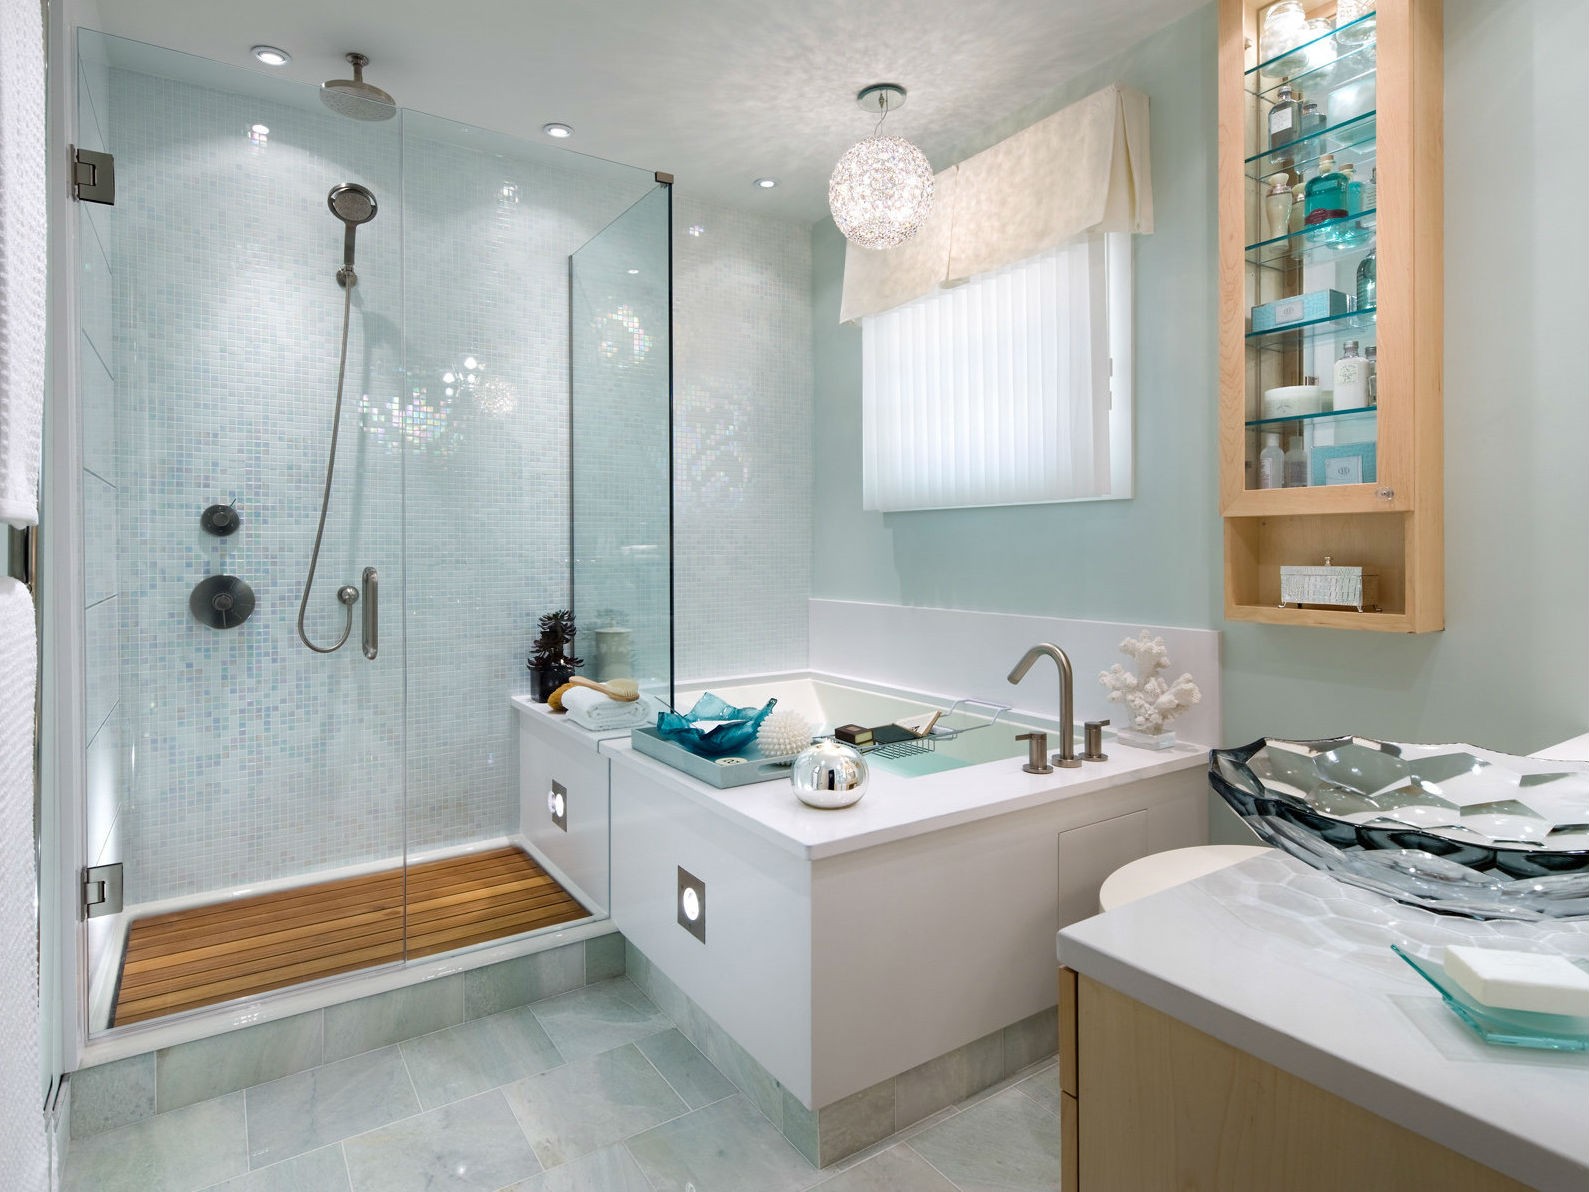 Лучшие идеи дизайна интерьера ванной комнаты 6 кв. м. — вороковский.рф | вороковский.рф